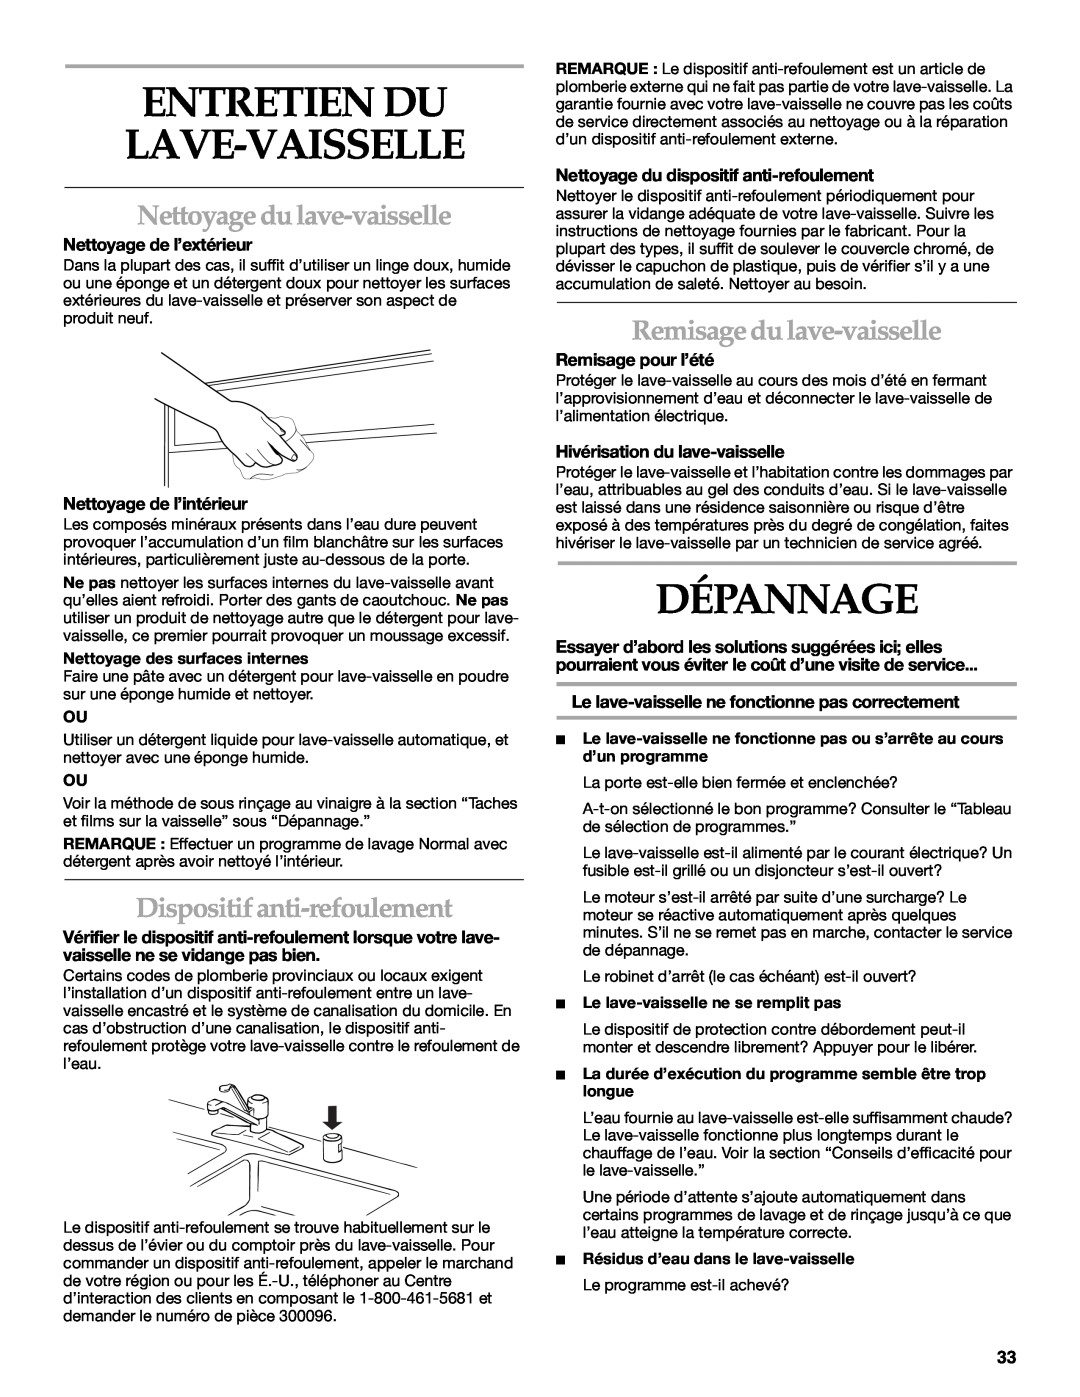 KitchenAid KUDR01TJ manual Entretien Du Lave-Vaisselle, Dépannage, Nettoyage du lave-vaisselle, Dispositif anti-refoulement 